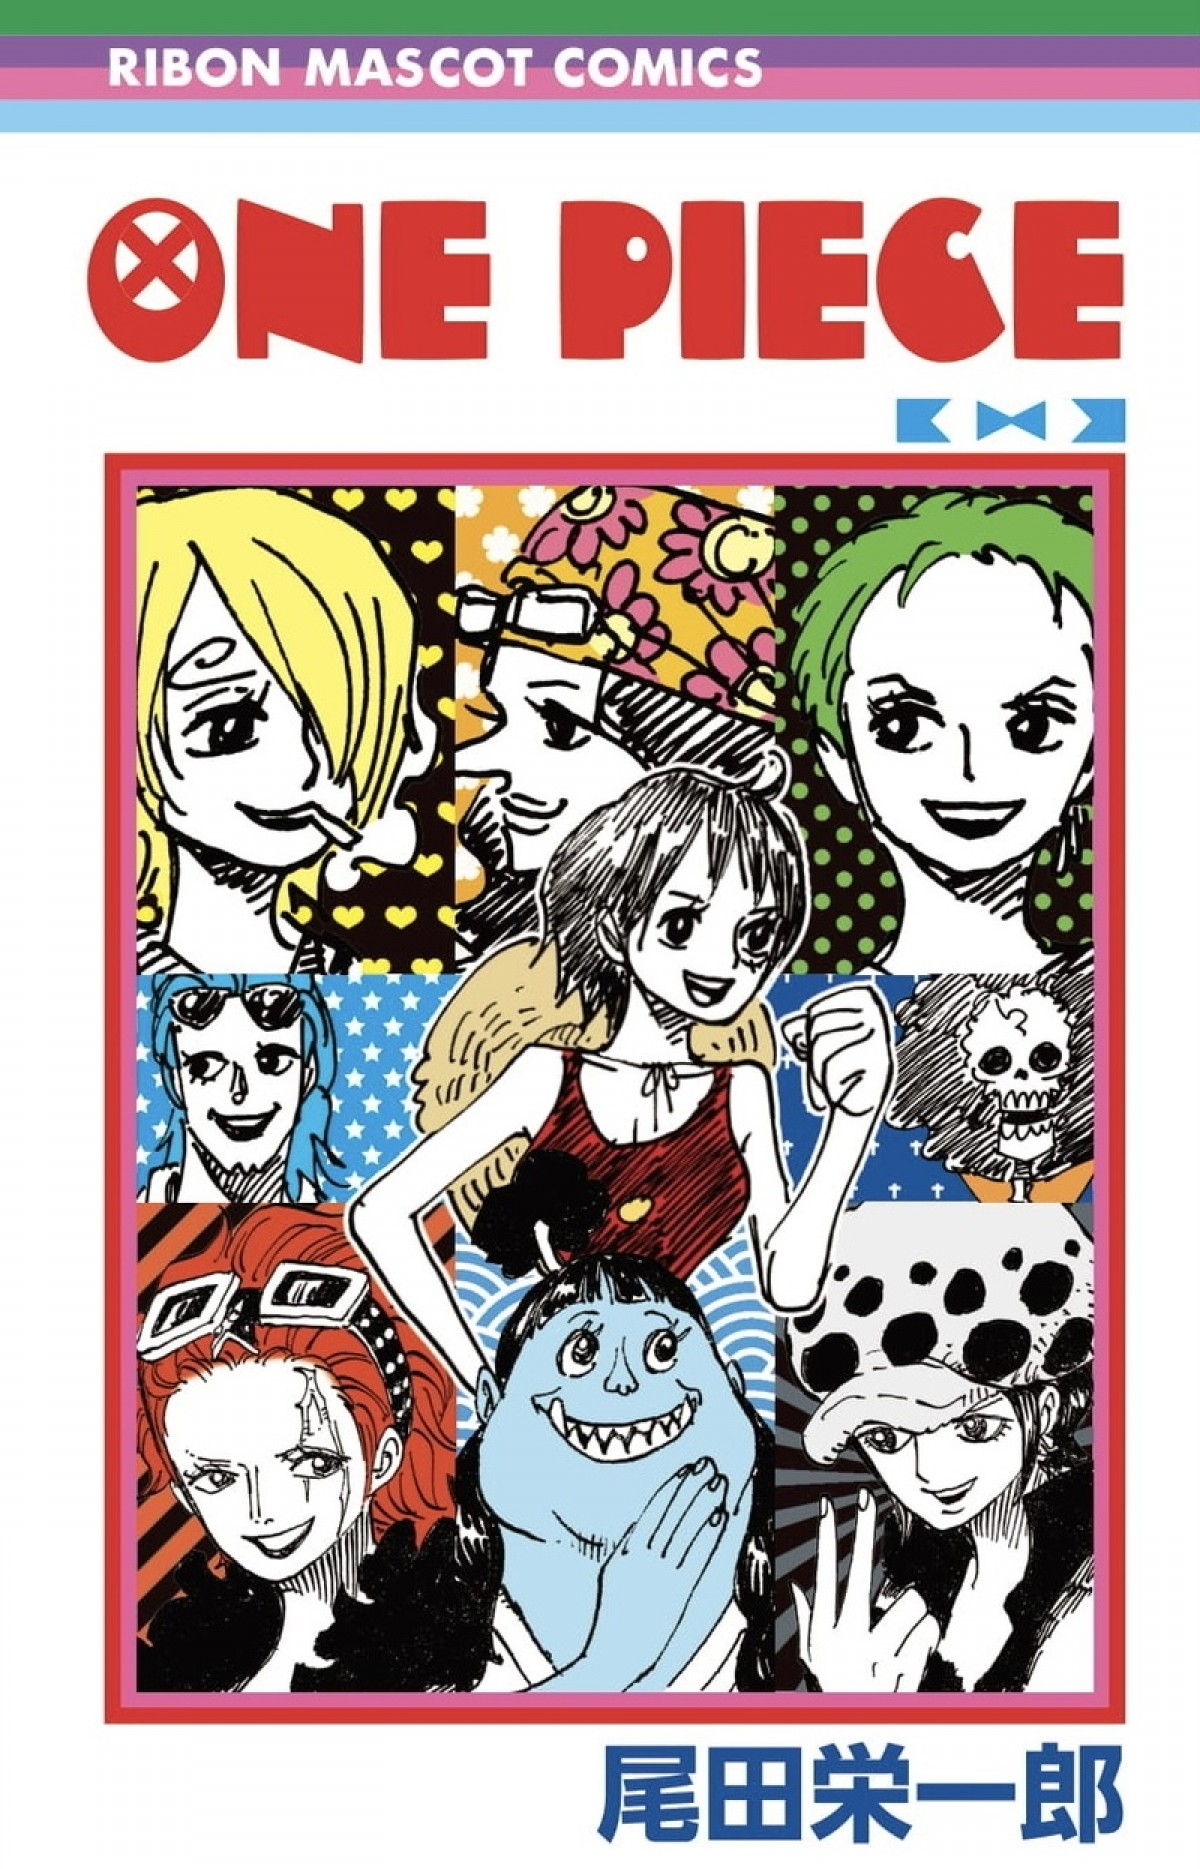 One Piece りぼん とコラボ ハニーレモンソーダ 村田真優のナミイラスト公開 21年2月2日 写真 クランクイン